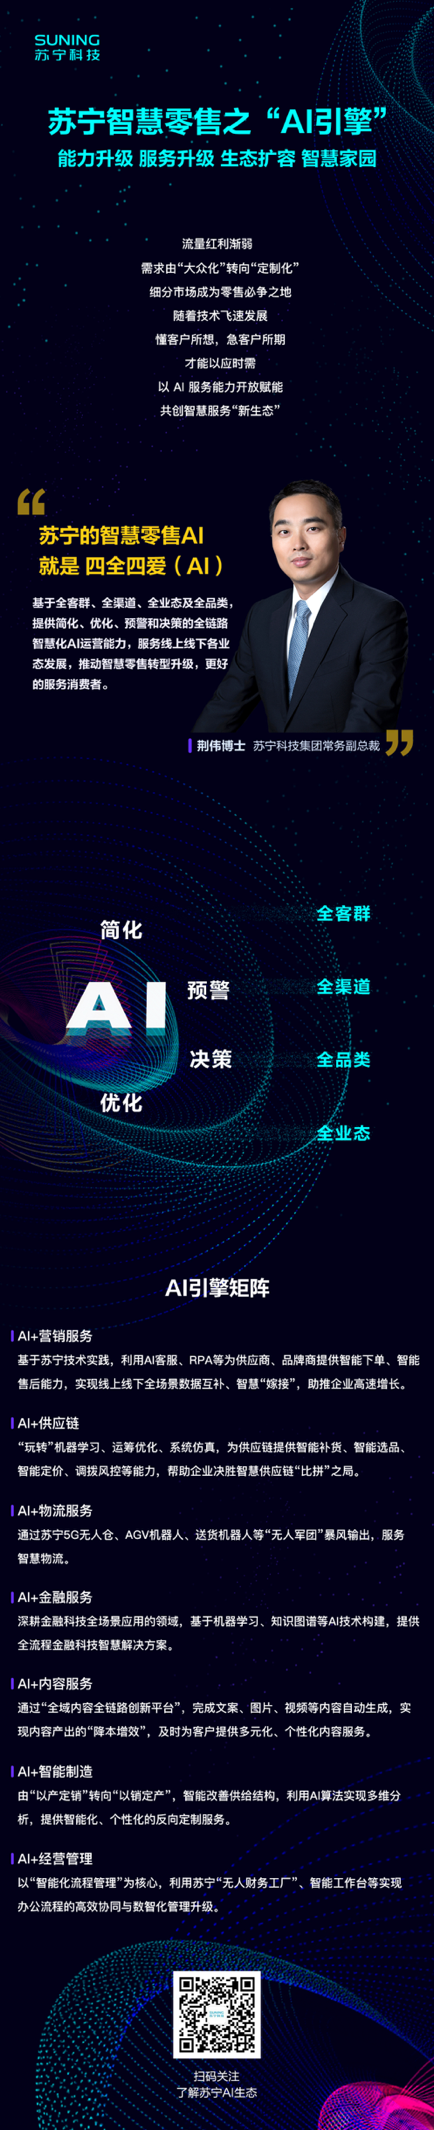 全场景数据融合+智慧互联，苏宁以“四全四爱（AI）”引擎拥抱未来零售新蓝海